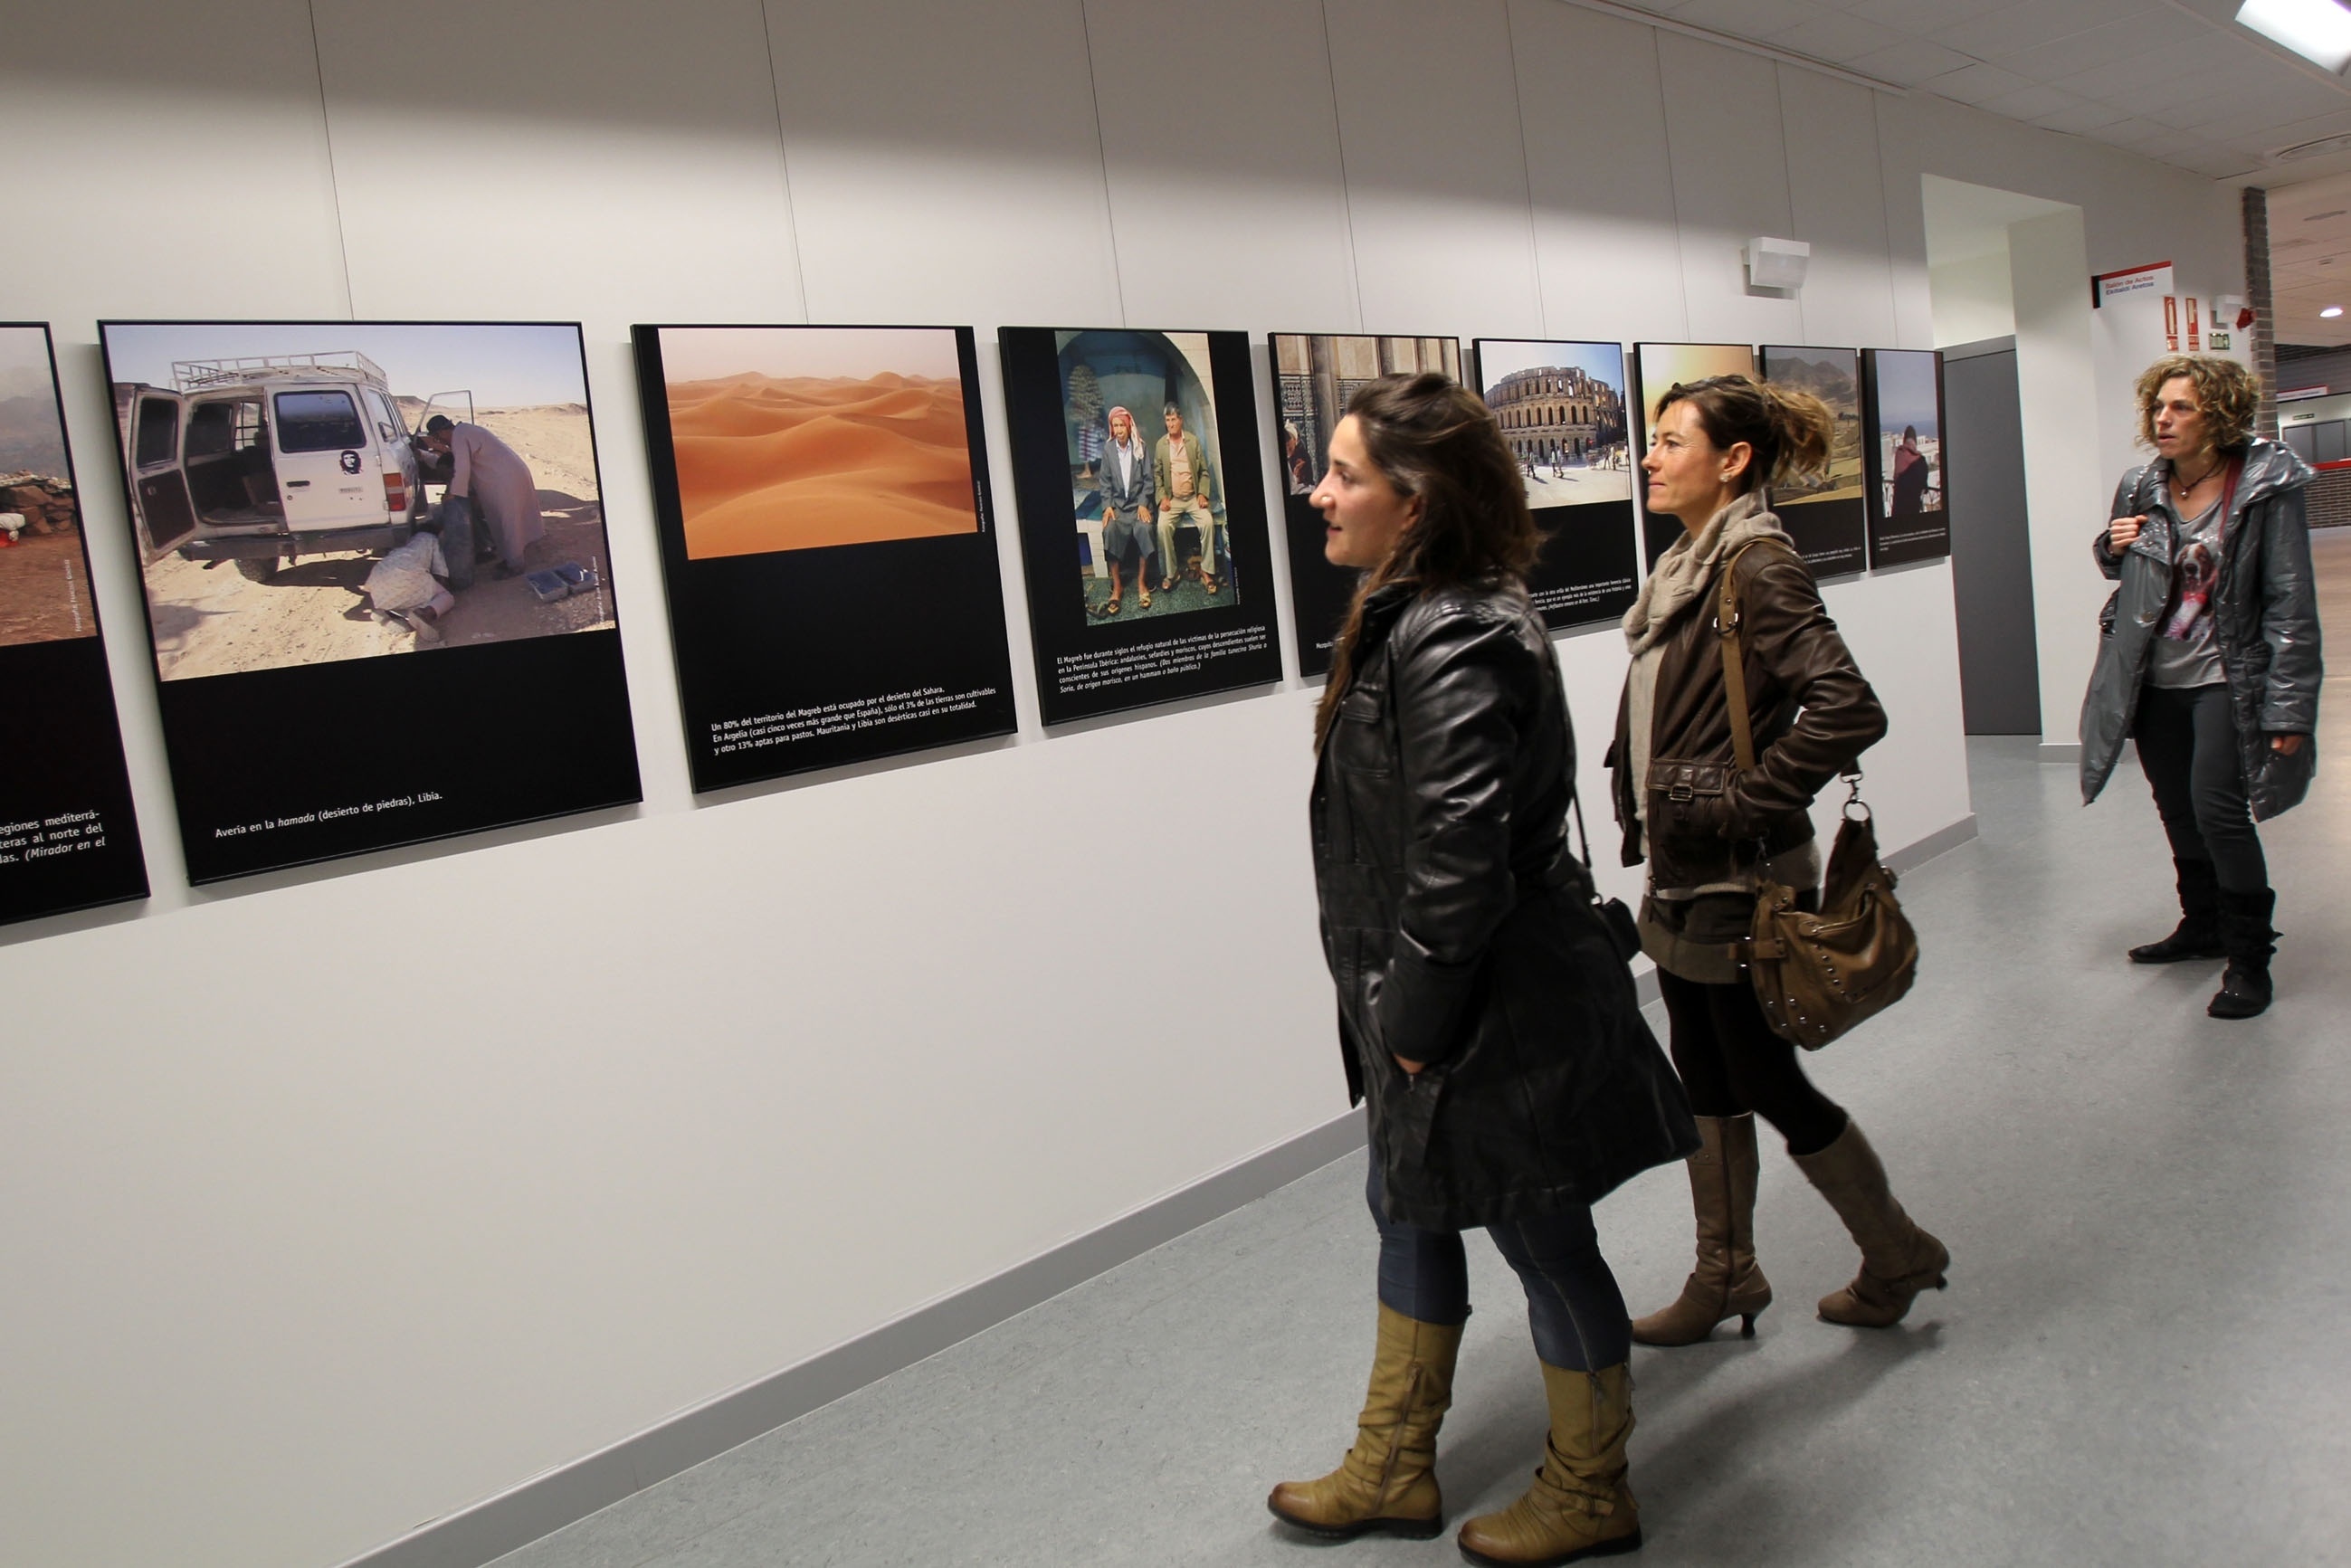 El campus de la UPNA en Tudela acoge hasta el 9 de enero una exposición fotográfica sobre el Magreb